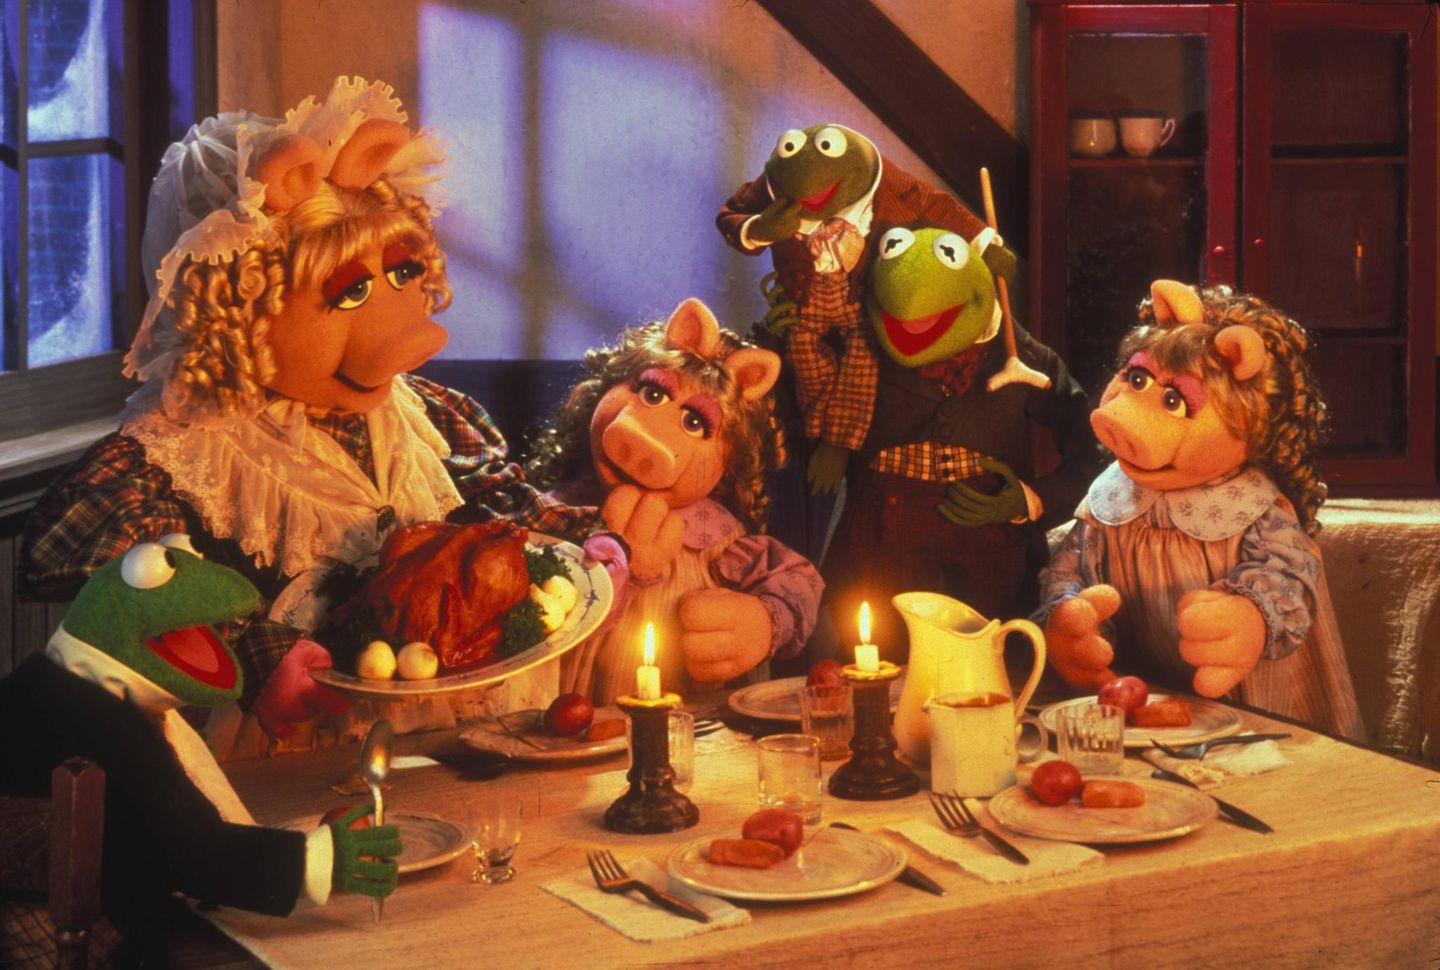 Weihnachtsfilme im Fernsehen: "Die Muppets Weihnachtsgeschichte"